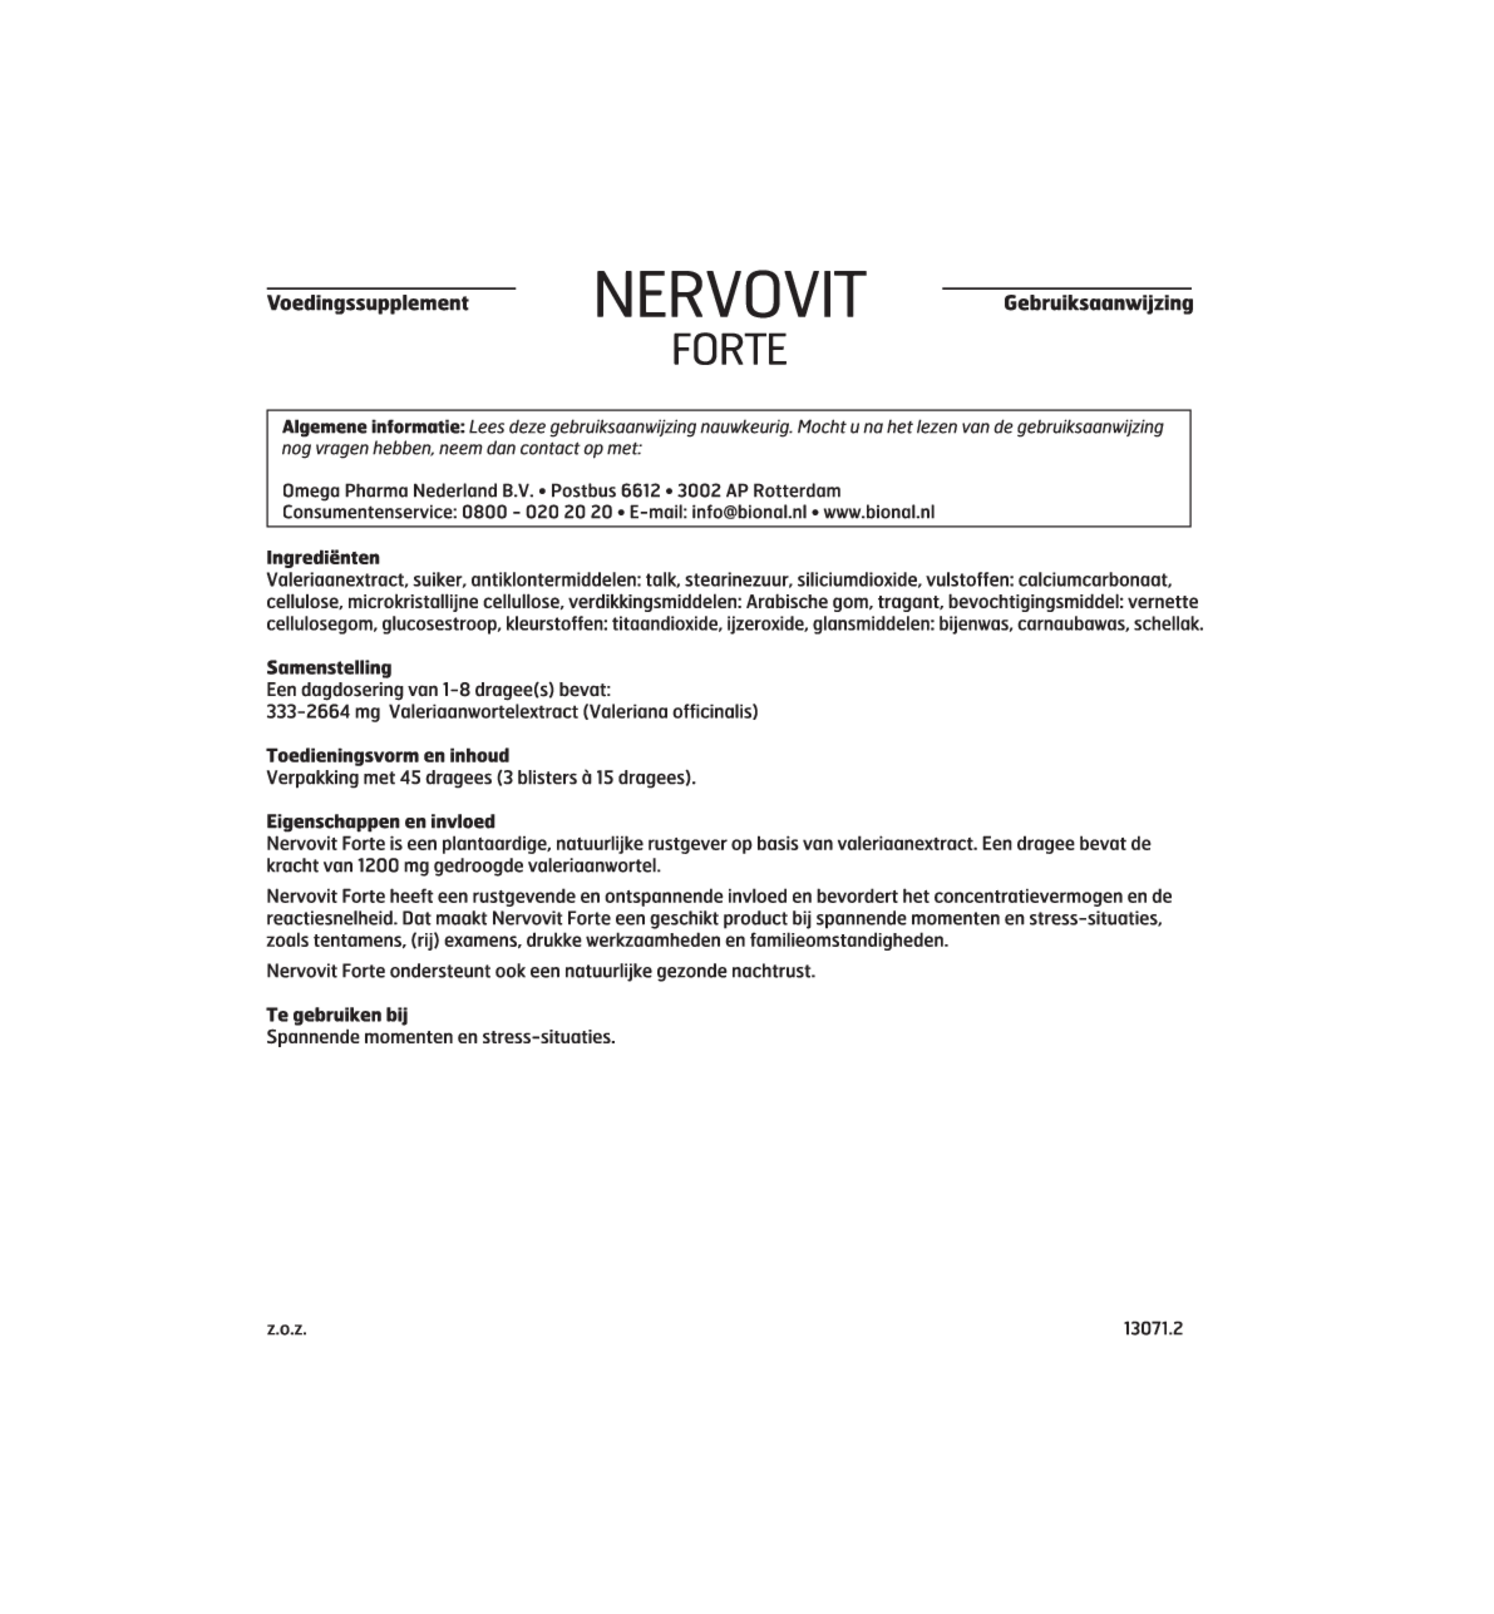 Nervovit Forte Tabletten - Voor mentale rust afbeelding van document #1, gebruiksaanwijzing